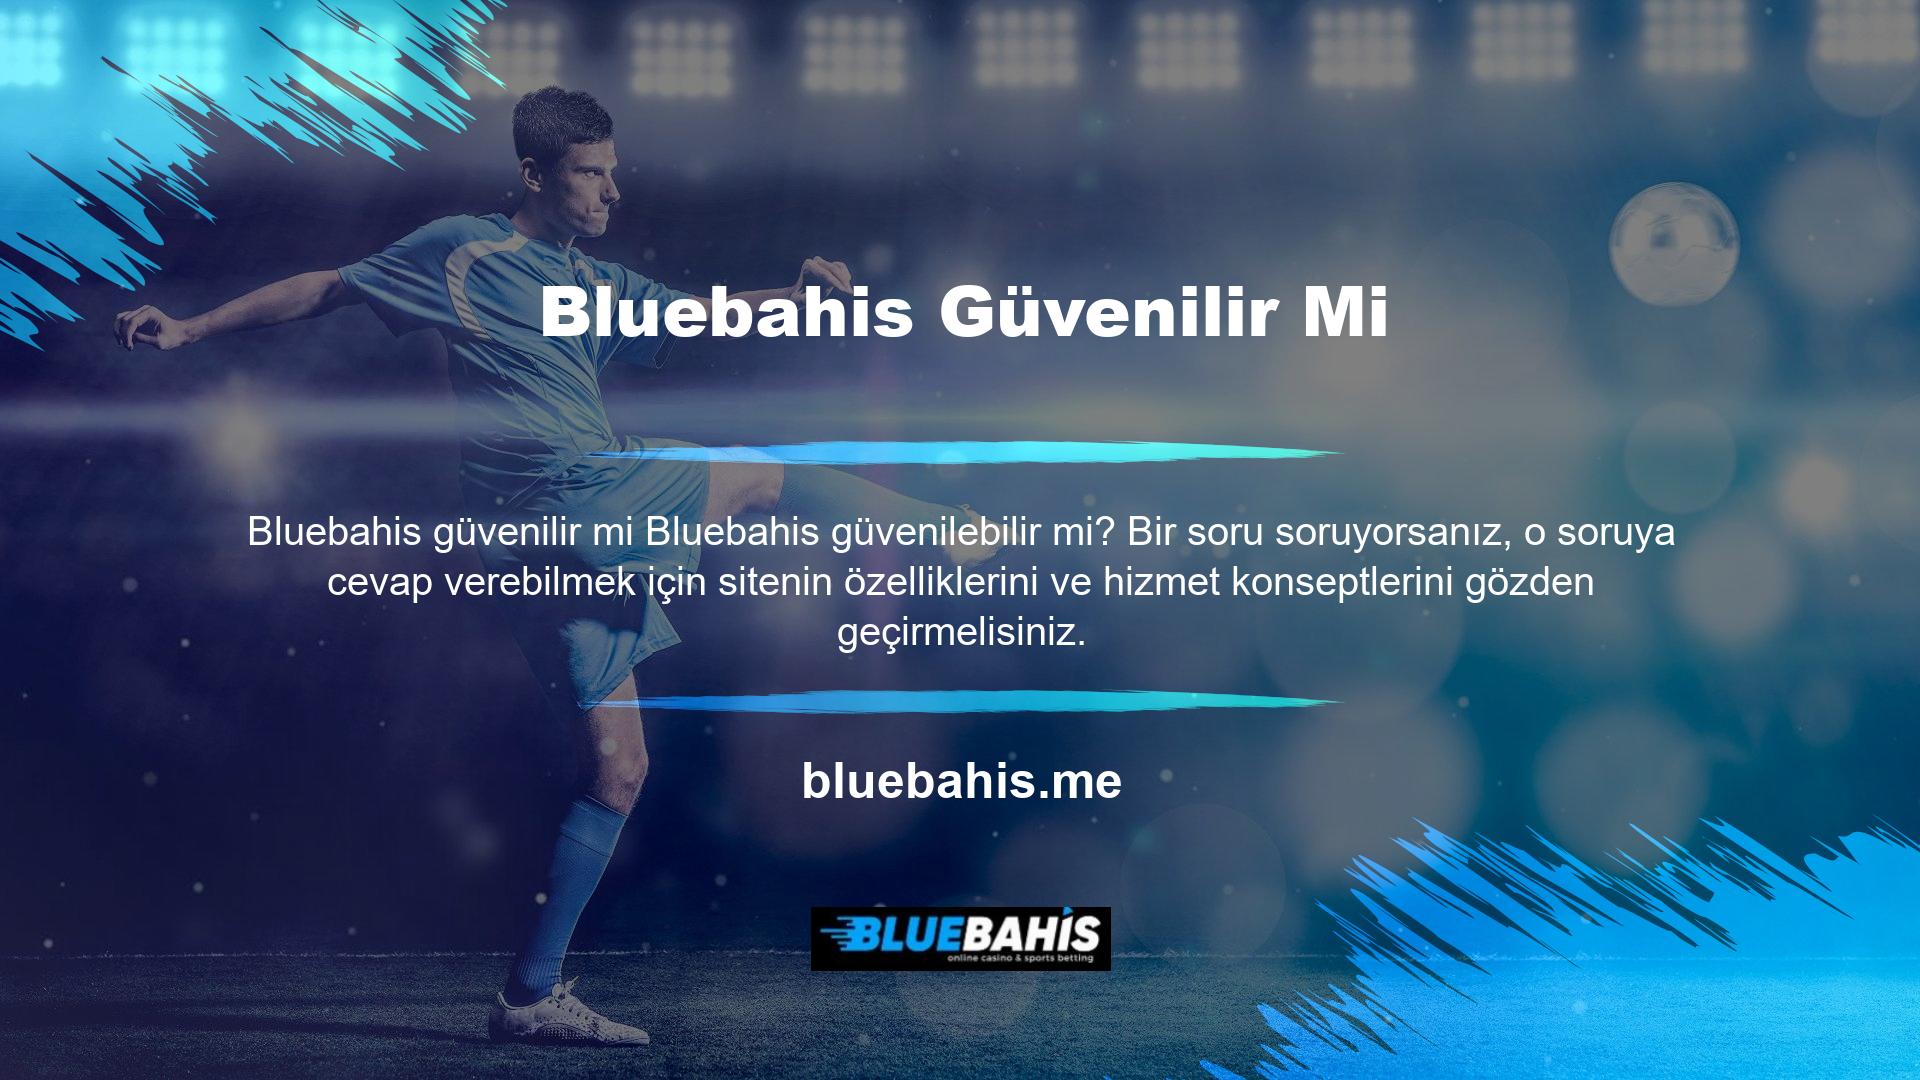 Öncelikle Bluebahis web sitesinin Bluebahis Limited Şirketi'nin tescilli markası olduğunu bilmelisiniz